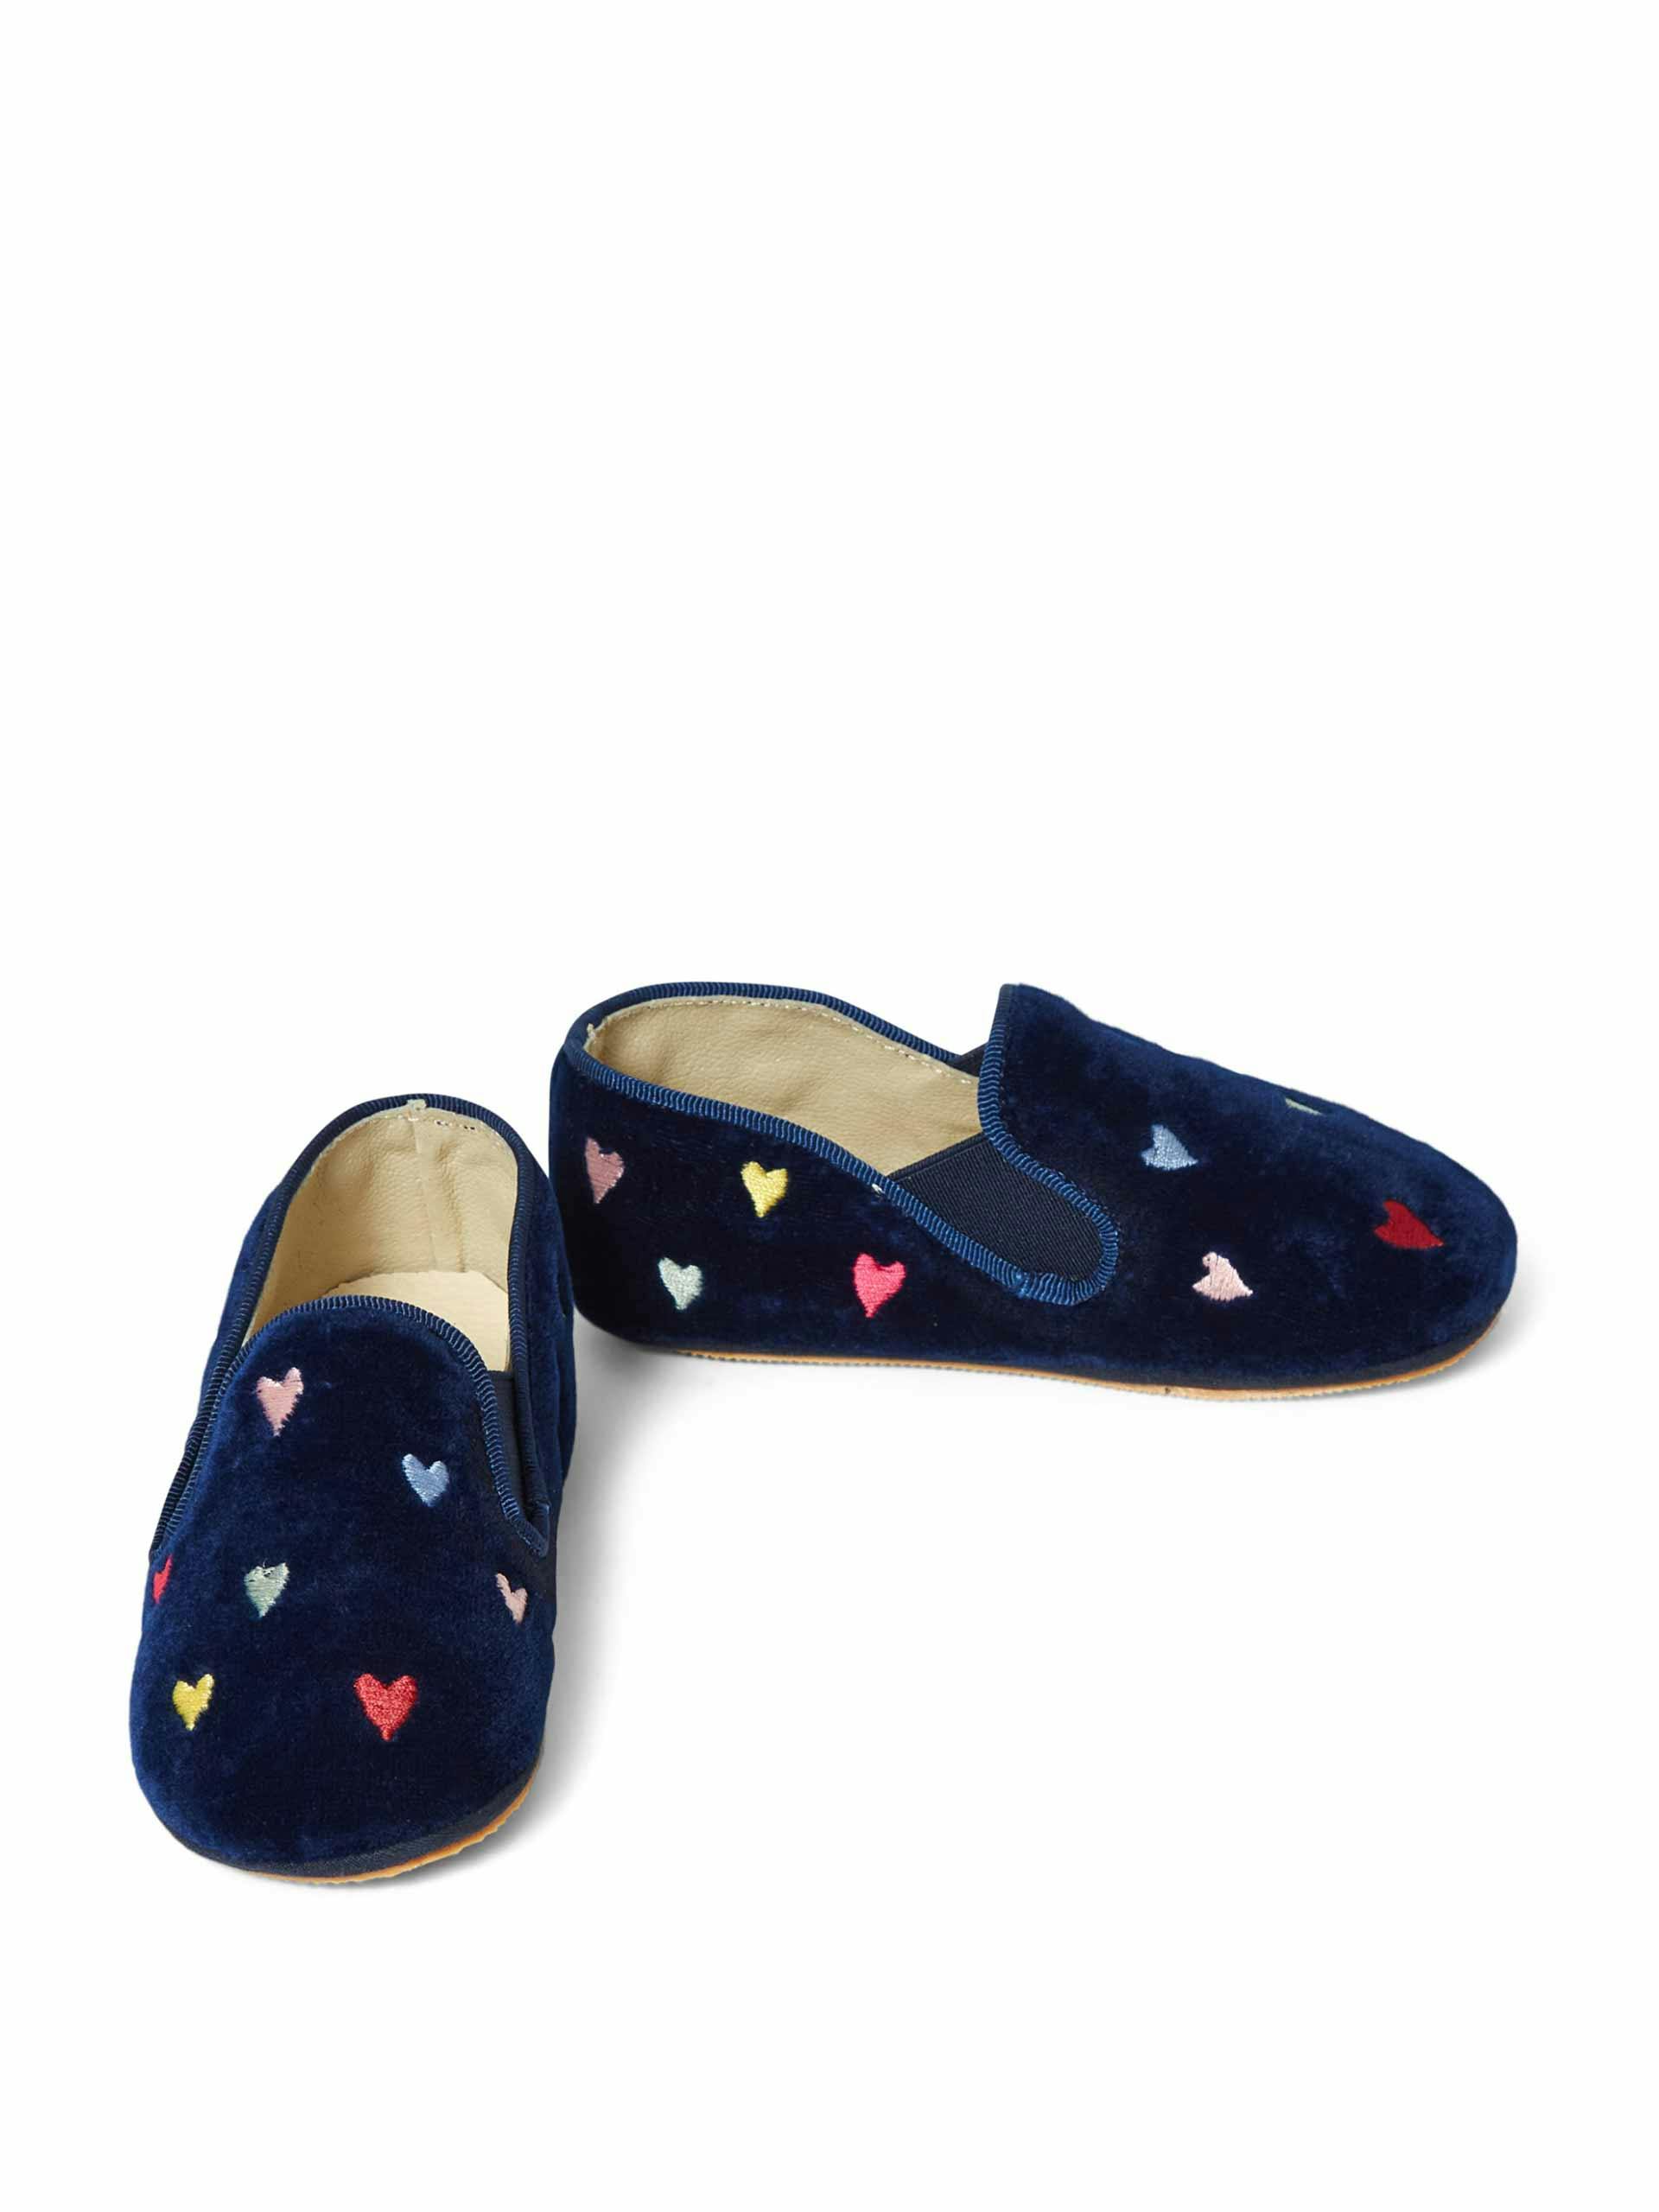 Navy heart slippers